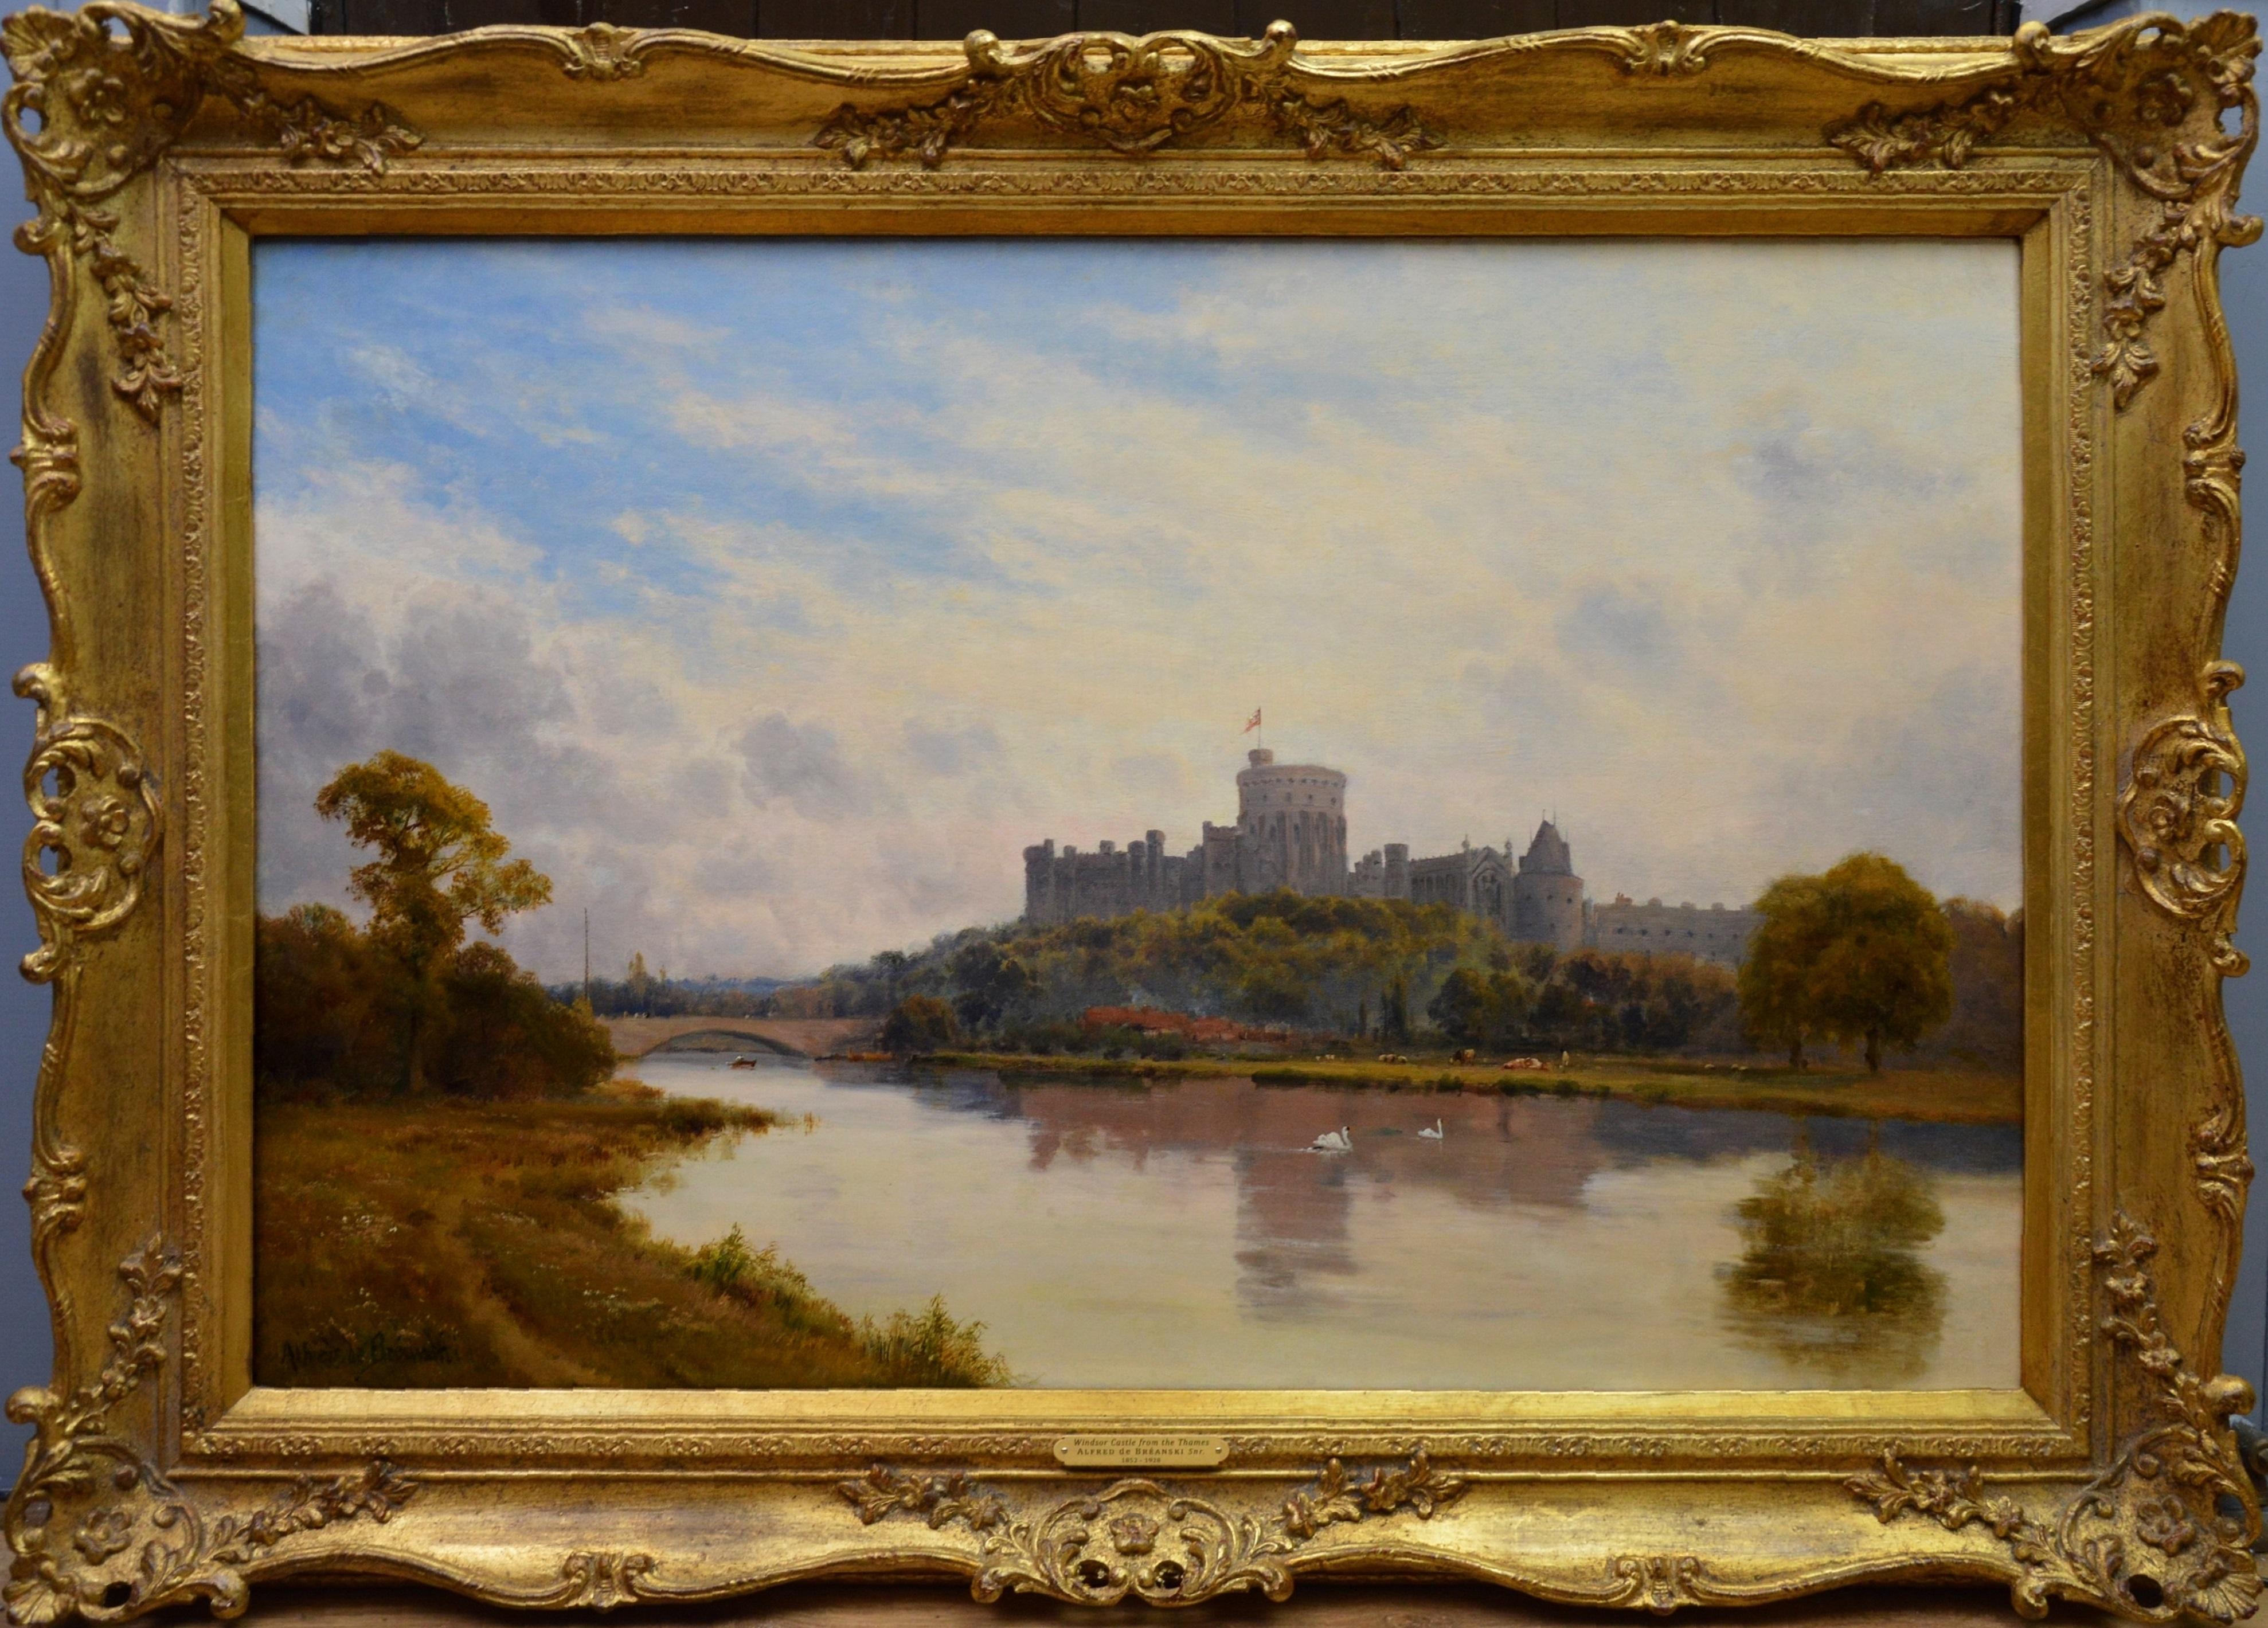 Alfred de Breanski Sr. Landscape Painting - Windsor Castle from the Thames - 19th Century Royal Victorian River Landscape